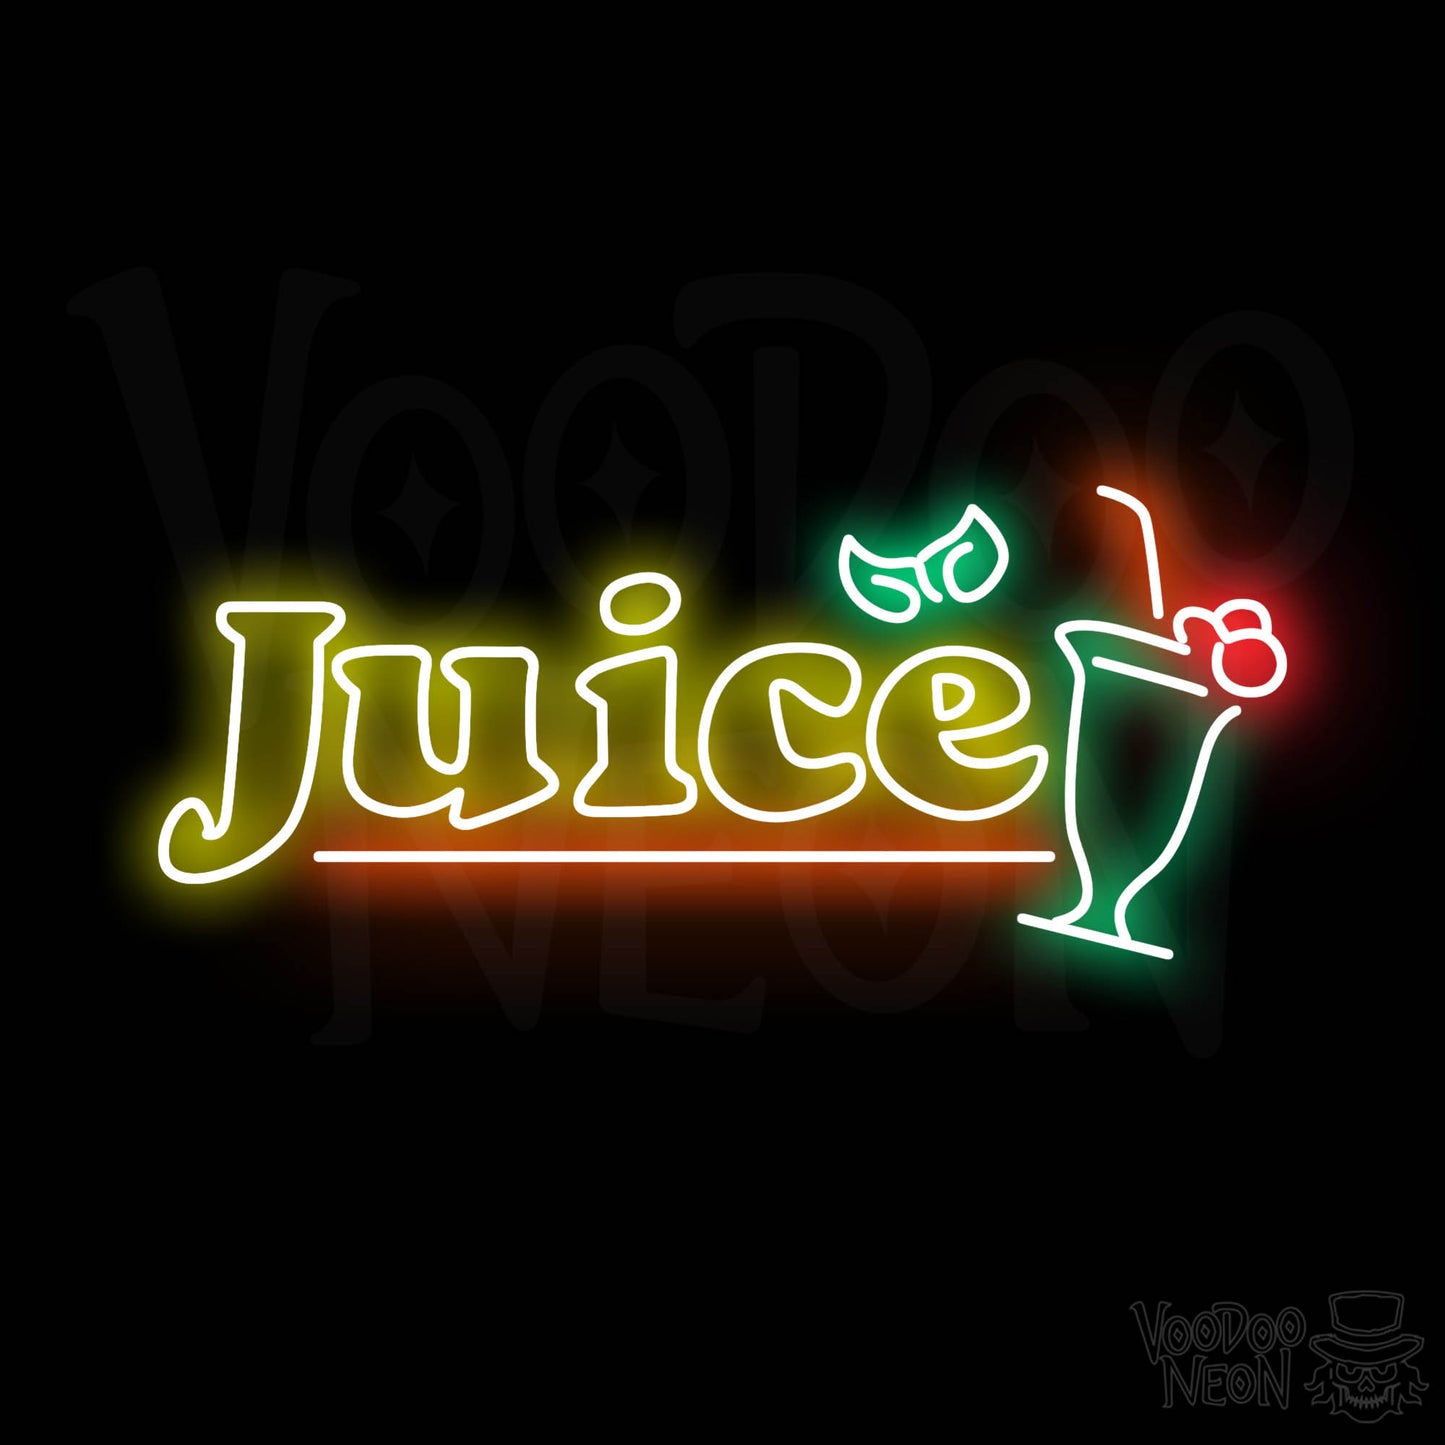 Juice LED Neon - Multi-Color